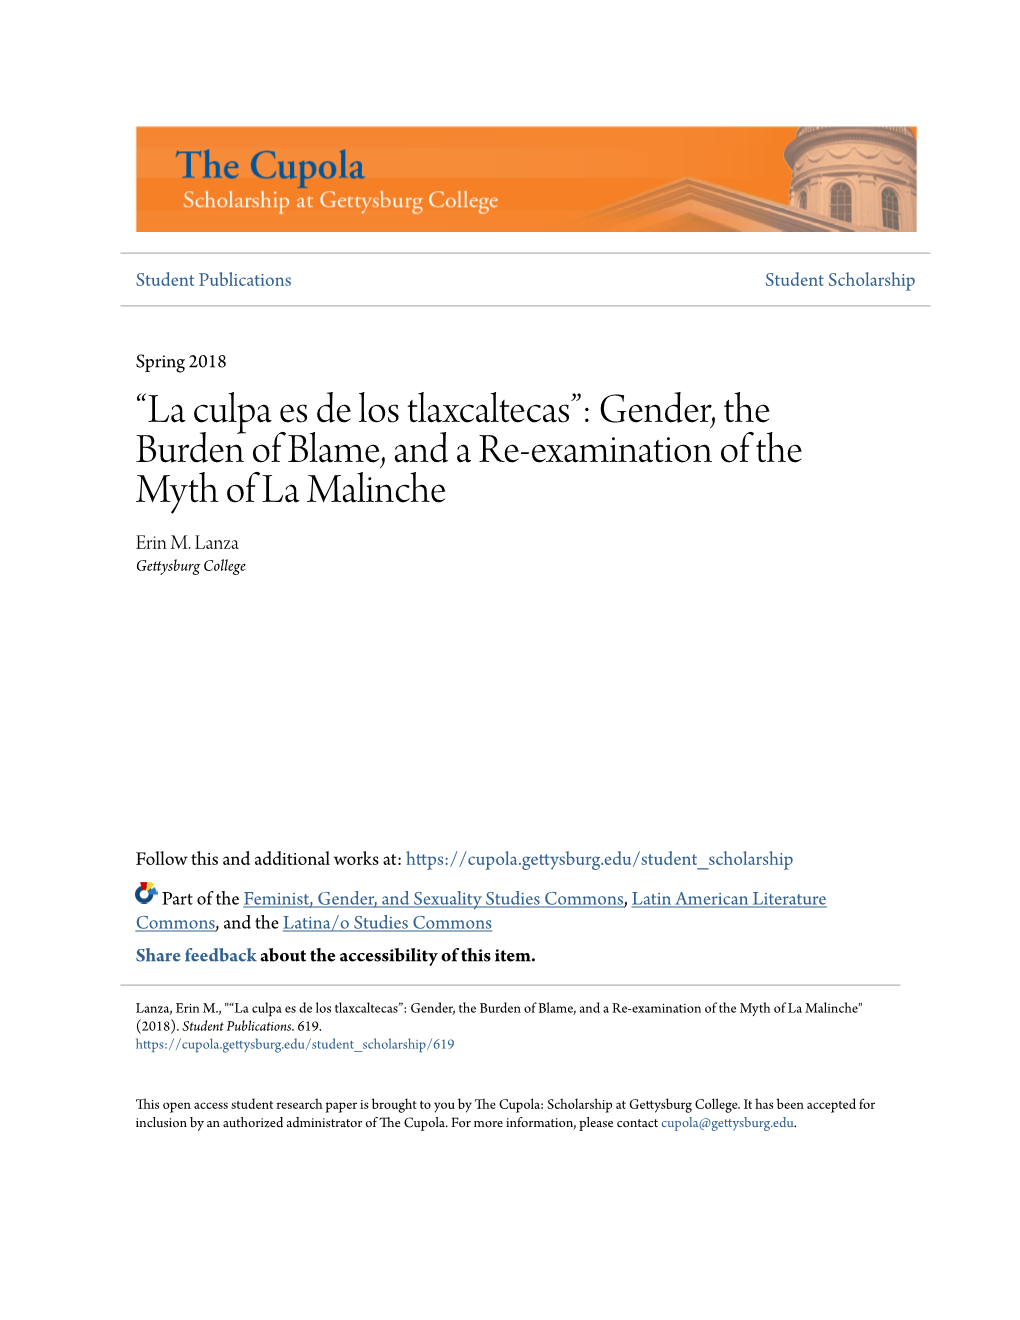 La Culpa Es De Los Tlaxcaltecas”: Gender, the Burden of Blame, and a Re-Examination of the Myth of La Malinche Erin M